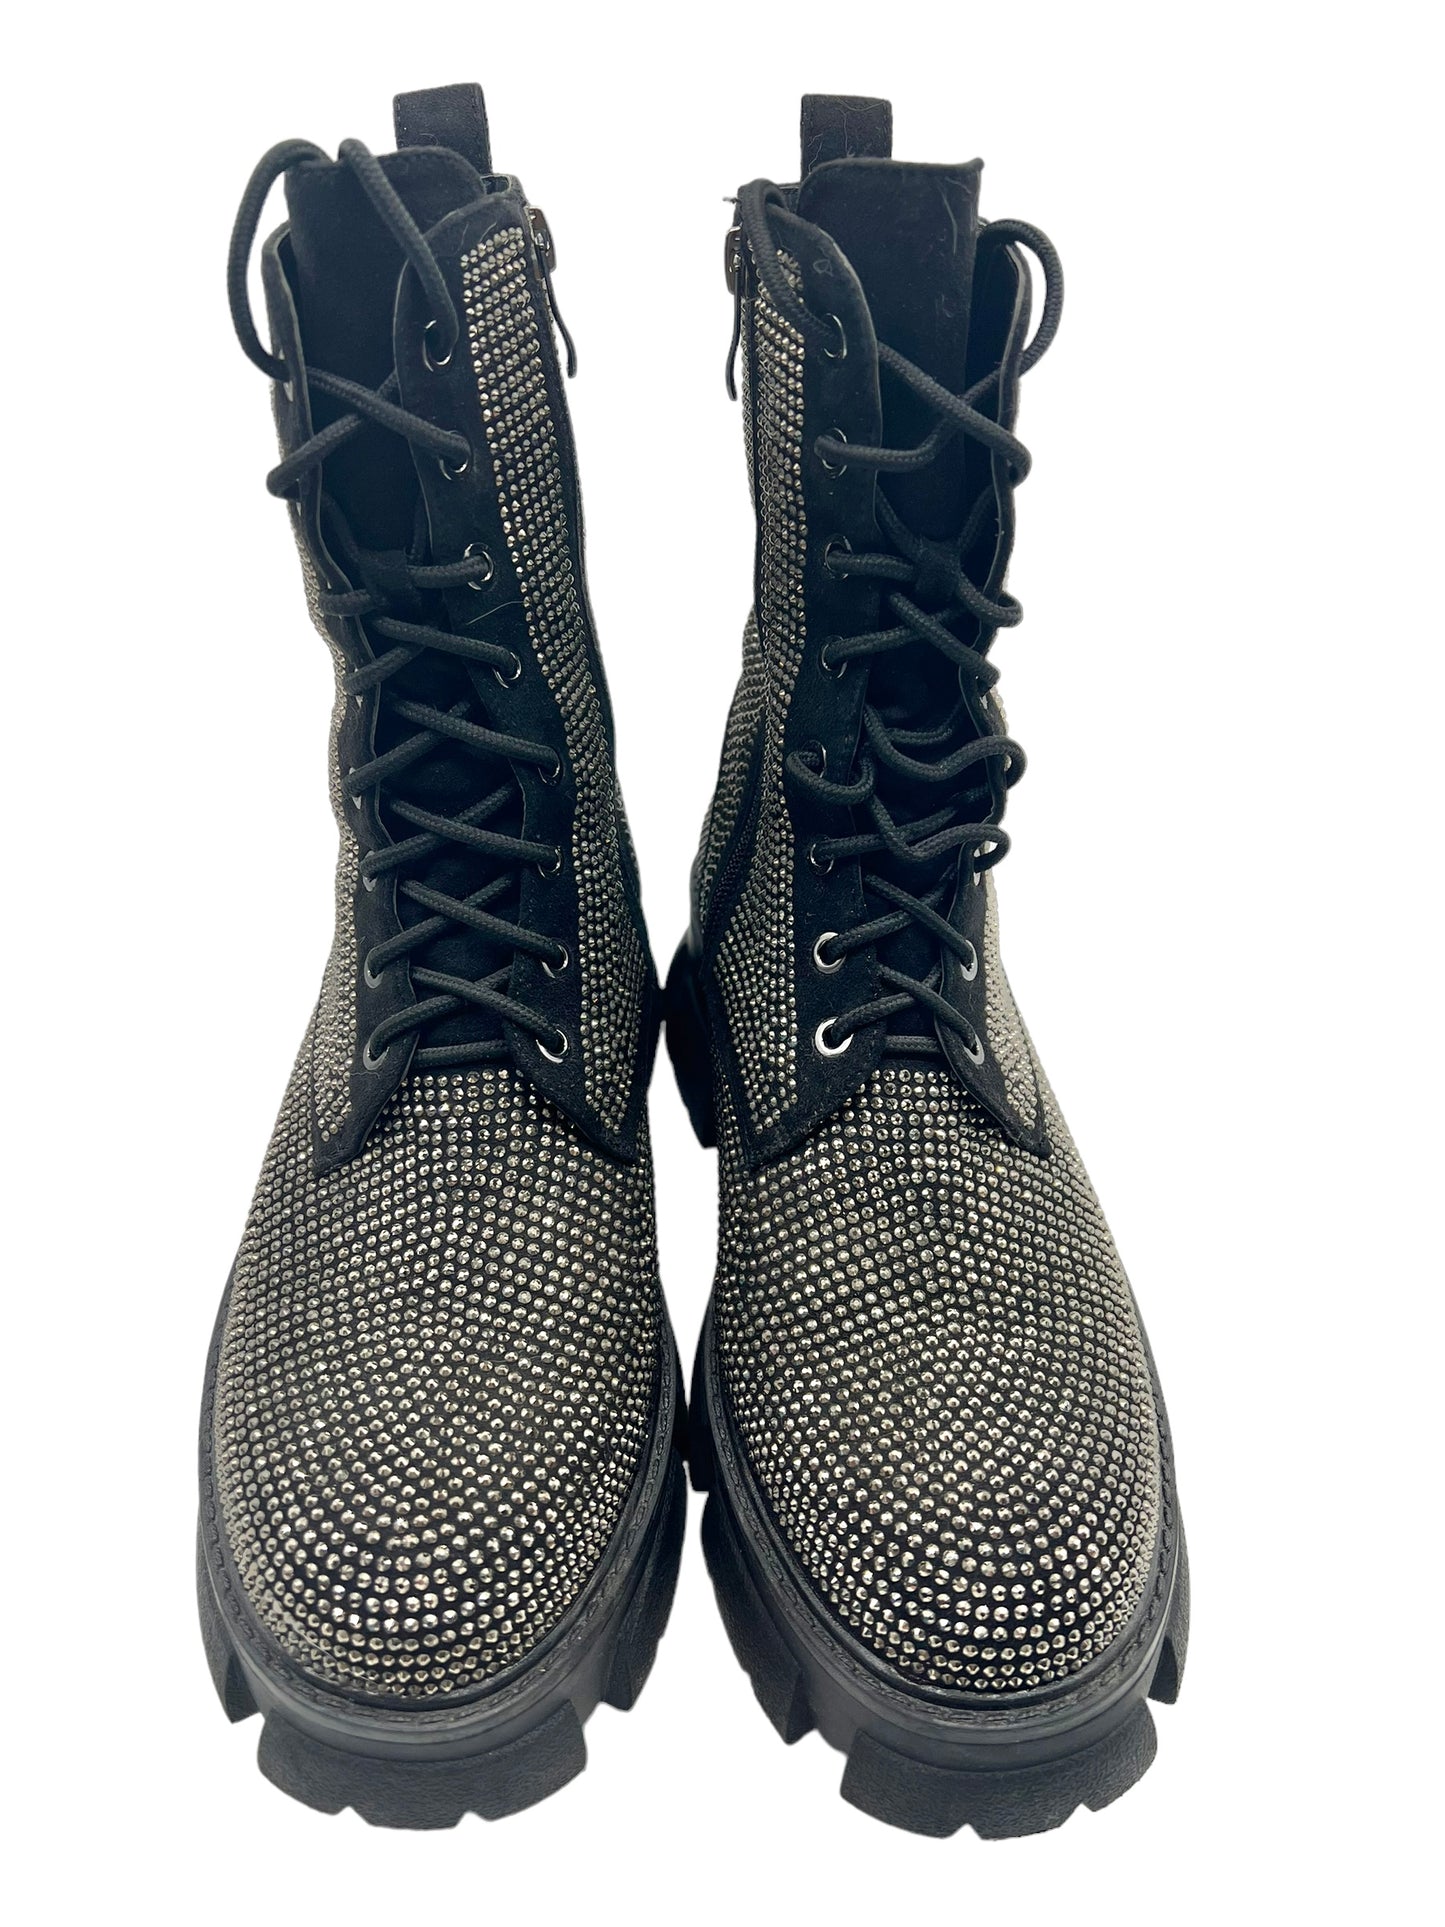 Azalea Wang Black Studded Embellished Size 9 Combat Boots